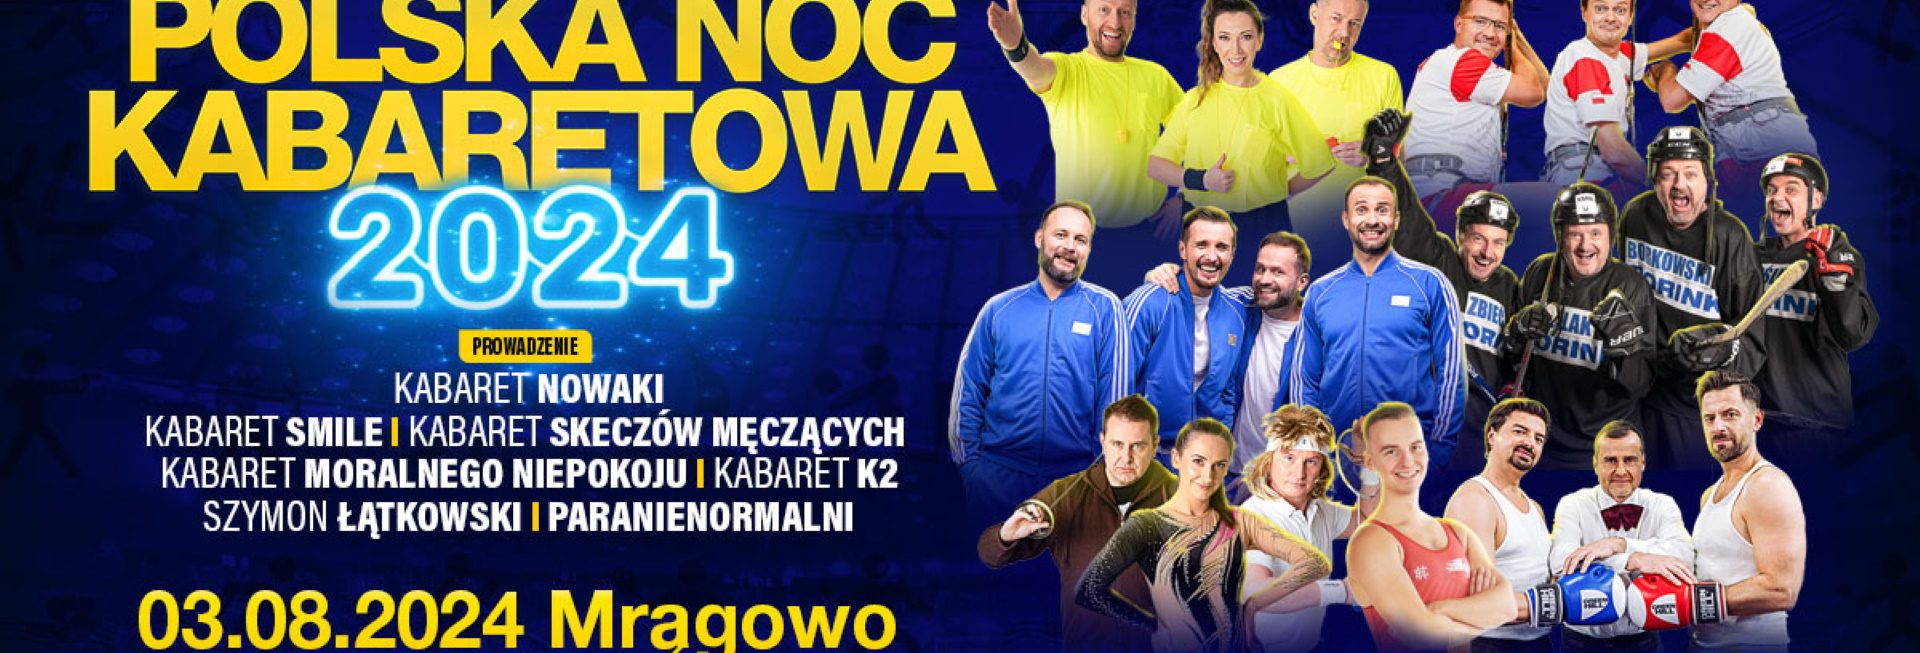 Plakat zapraszający w sobotę 3 sierpnia 2024 r. do Mrągowa na Polską Noc Kabaretową Mrągowo 2024.